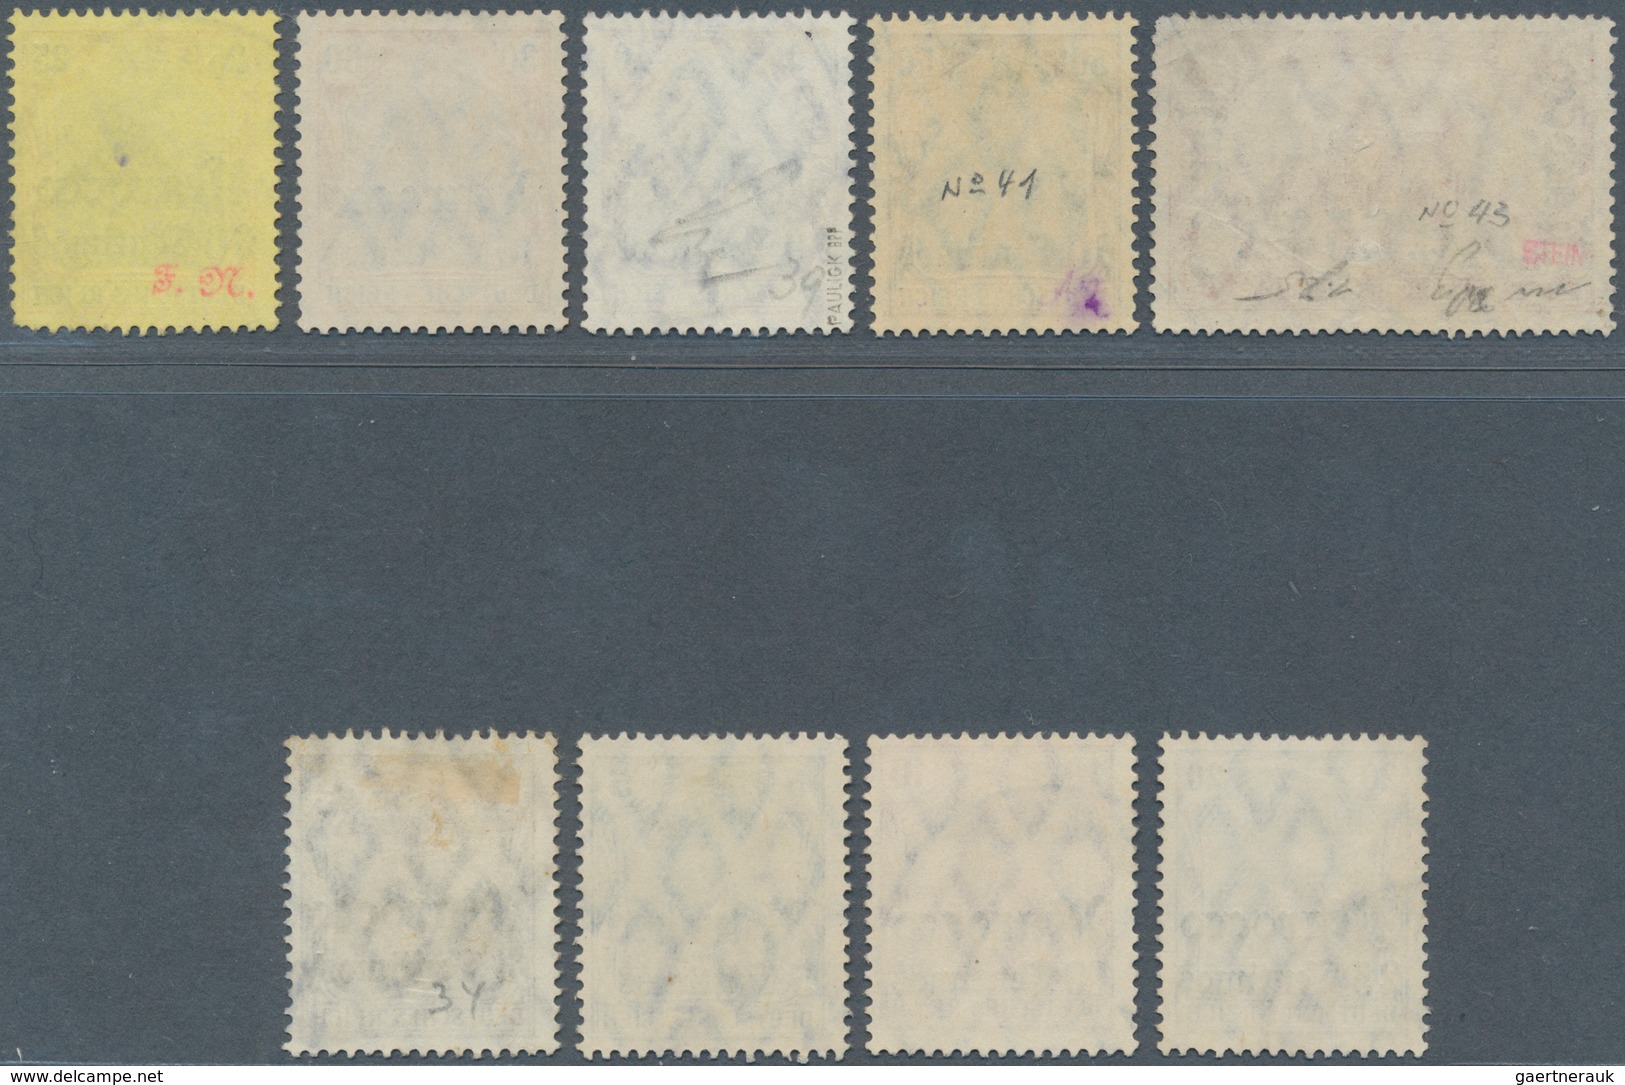 18483 Deutsche Post In Marokko: 1906. Lot Von 9 Gestempelten Werten, Dabei 1P 25C (runde Ecke) Und 50c. (M - Morocco (offices)